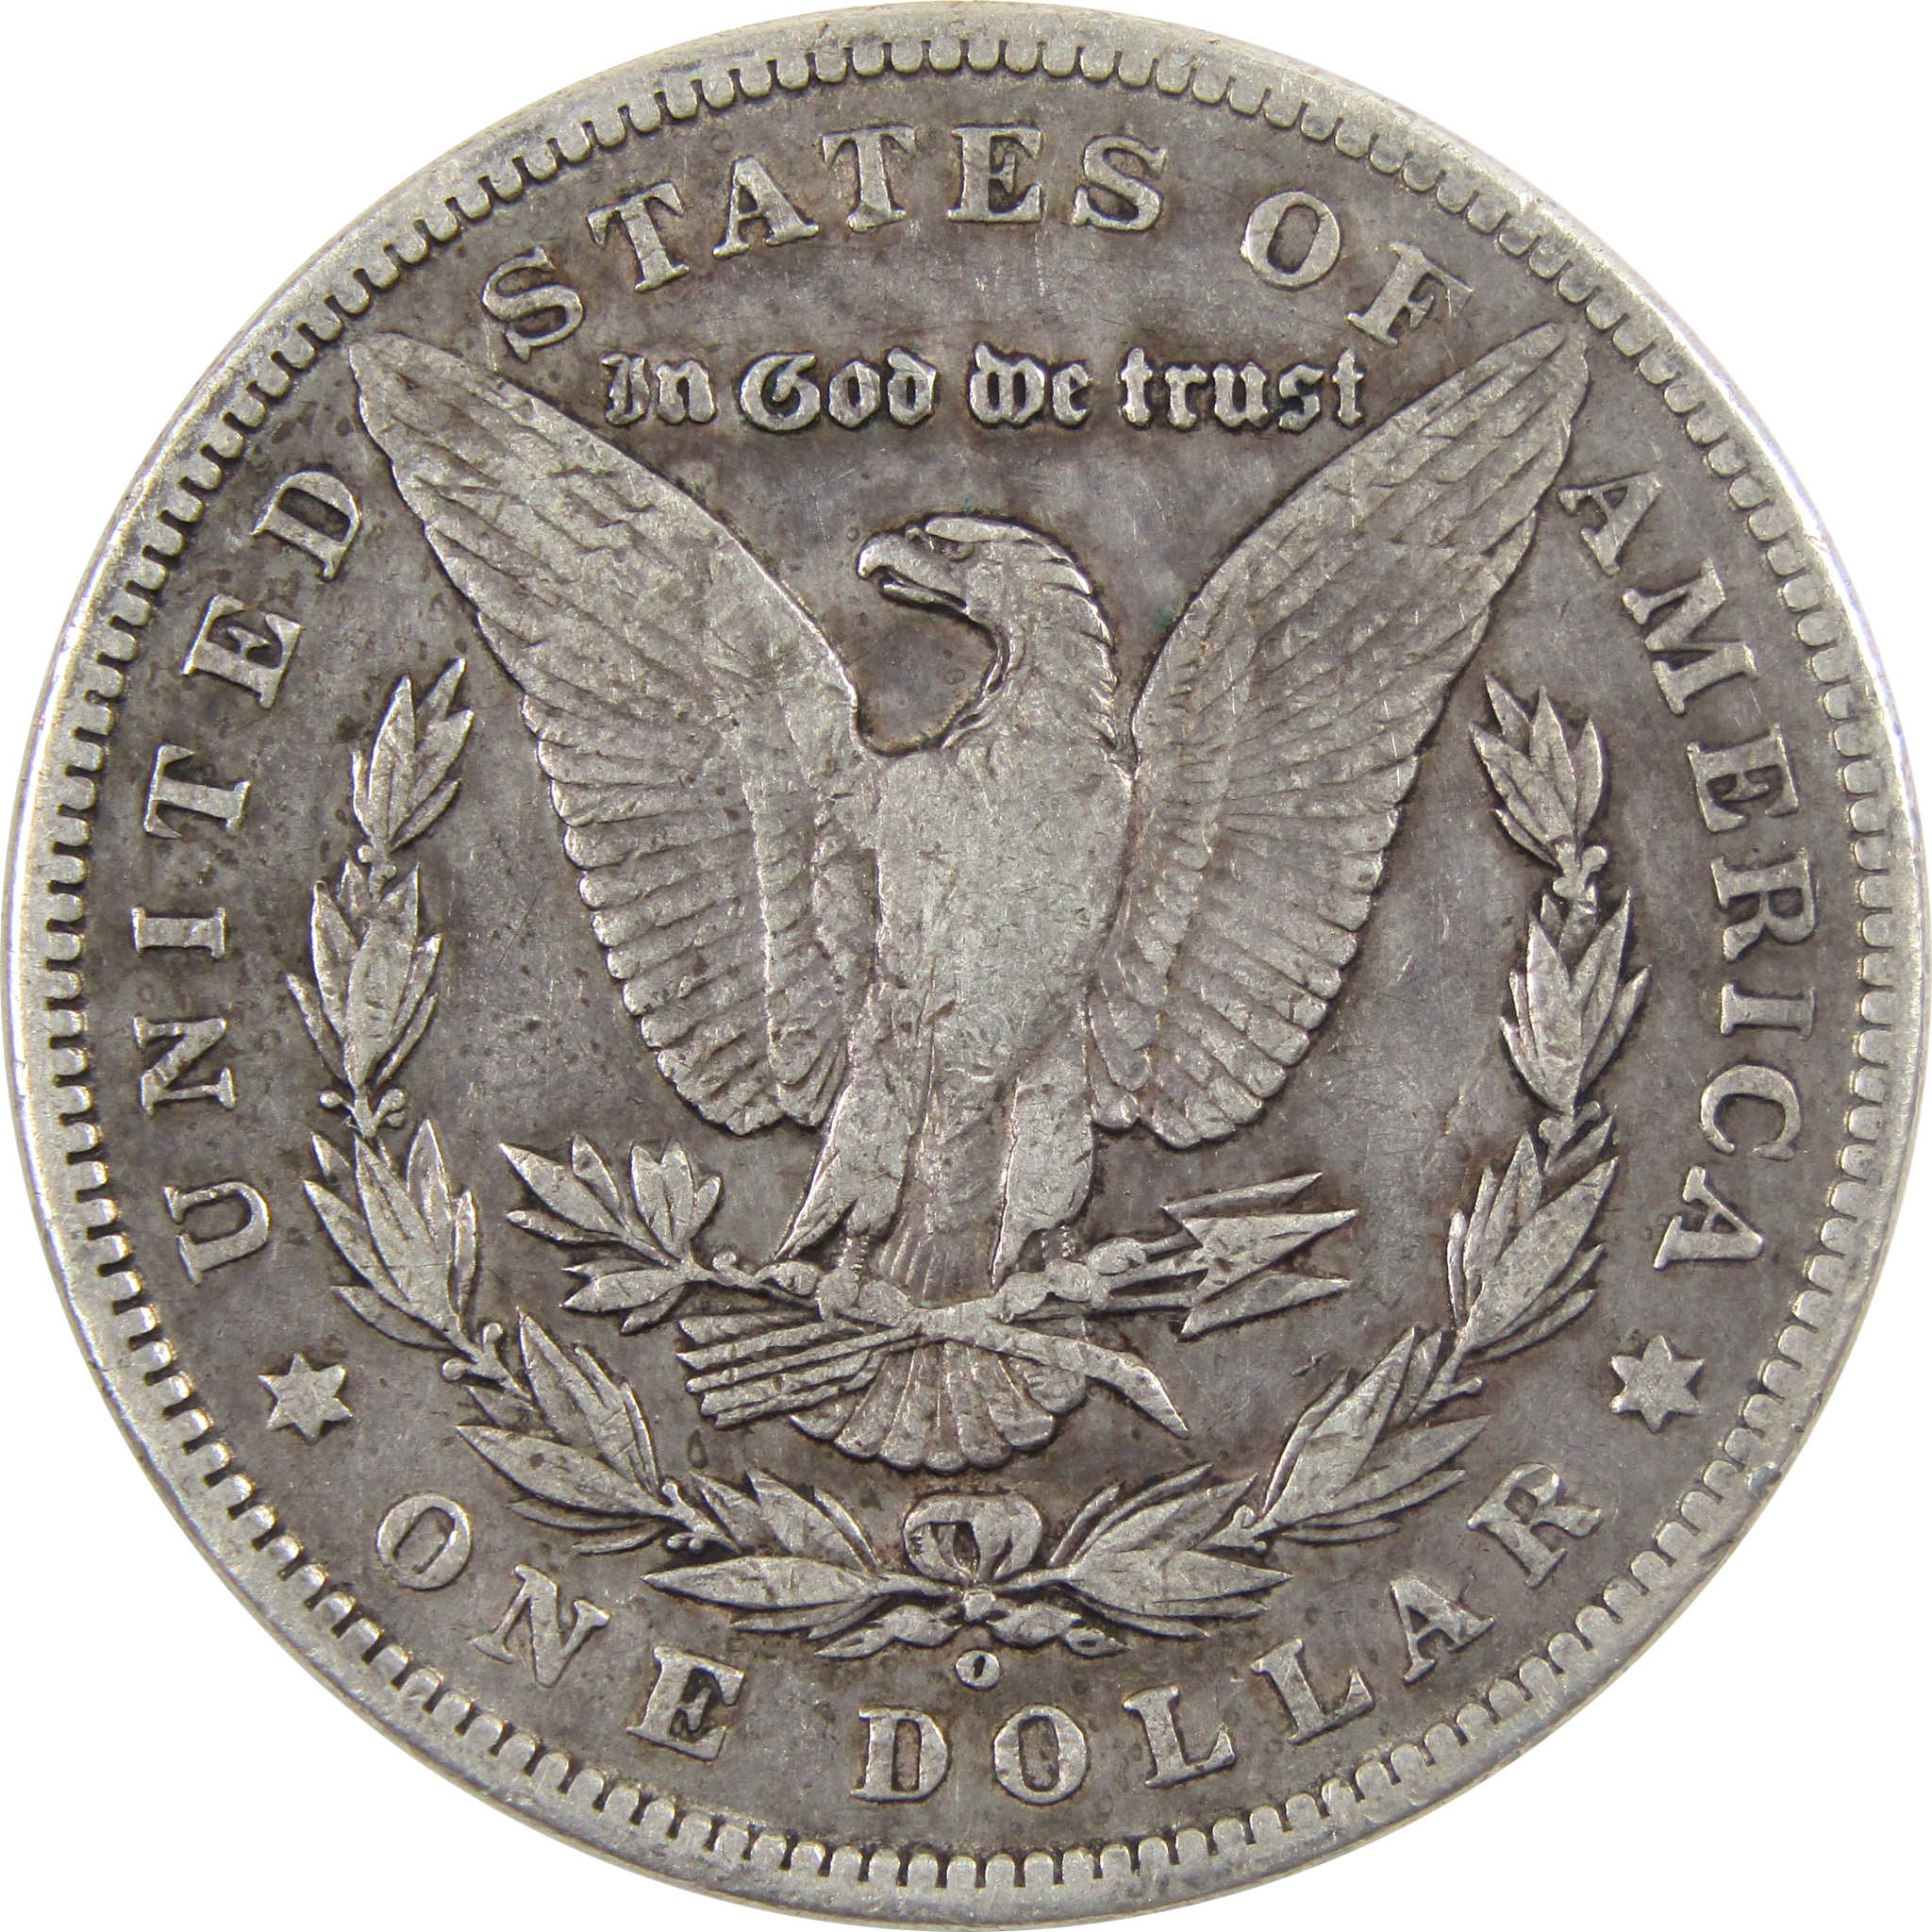 1899 O Micro O Morgan Dollar VF Very Fine 90% Silver $1 Coin SKU:I5943 - Morgan coin - Morgan silver dollar - Morgan silver dollar for sale - Profile Coins &amp; Collectibles